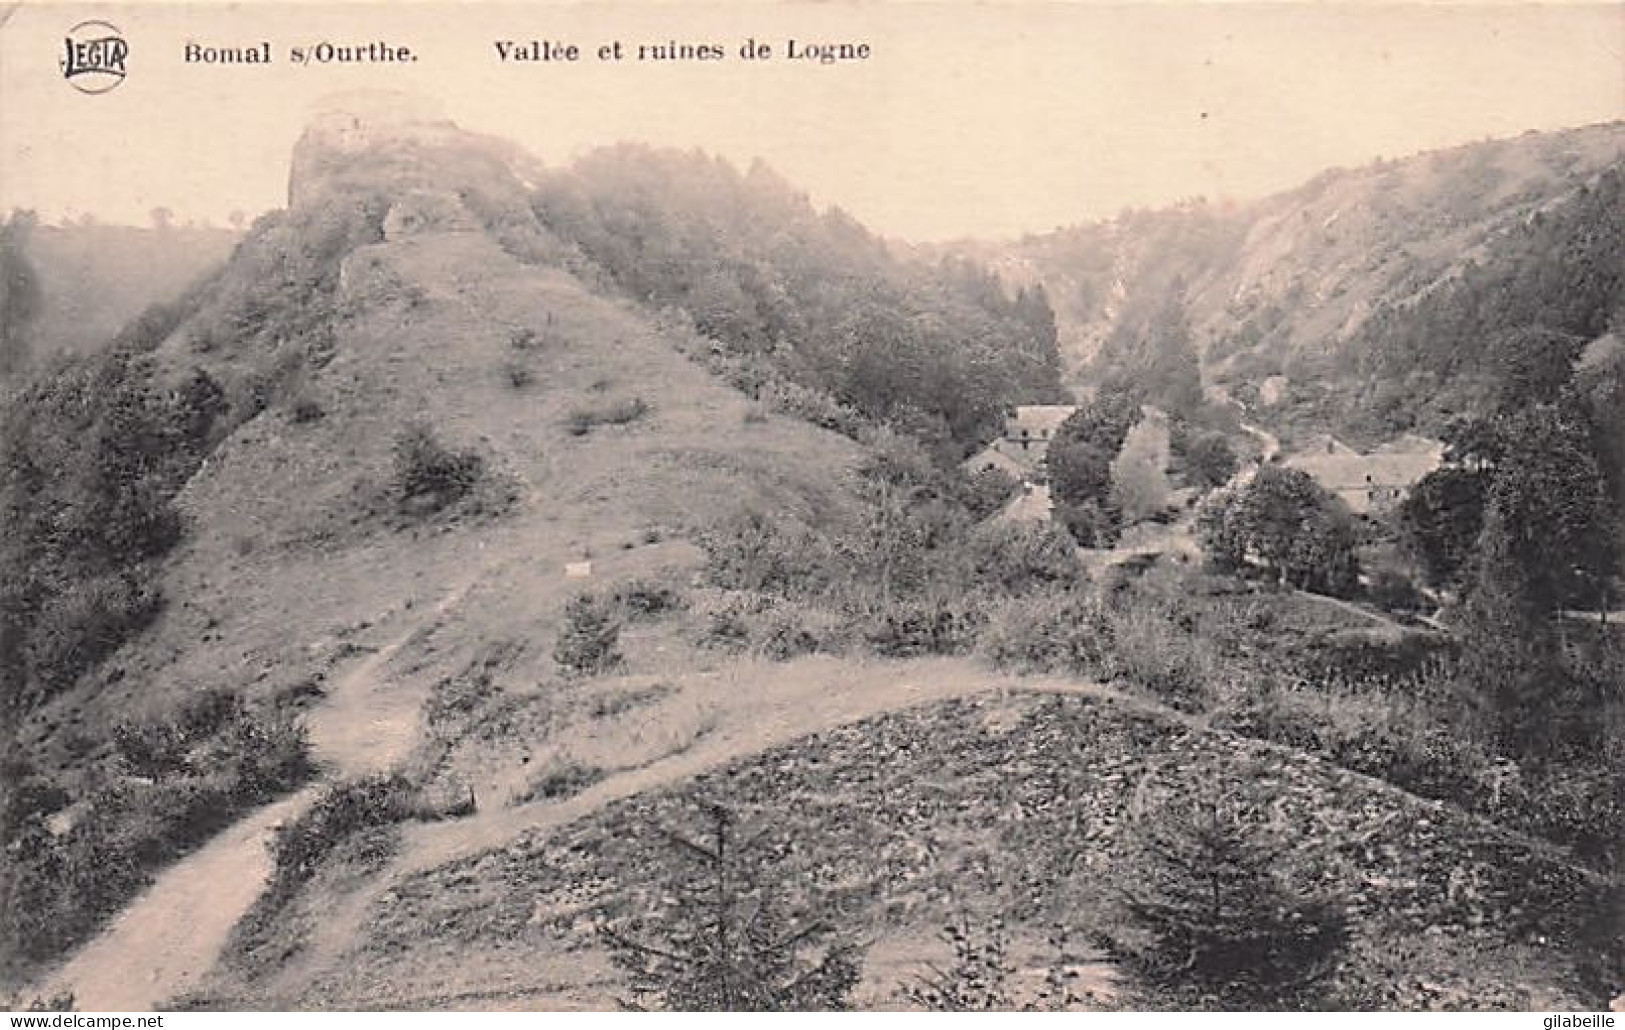 Durbuy - BOMAL Sur OURTHE - Vallée Et Ruines De Logne - 1913 - Durbuy